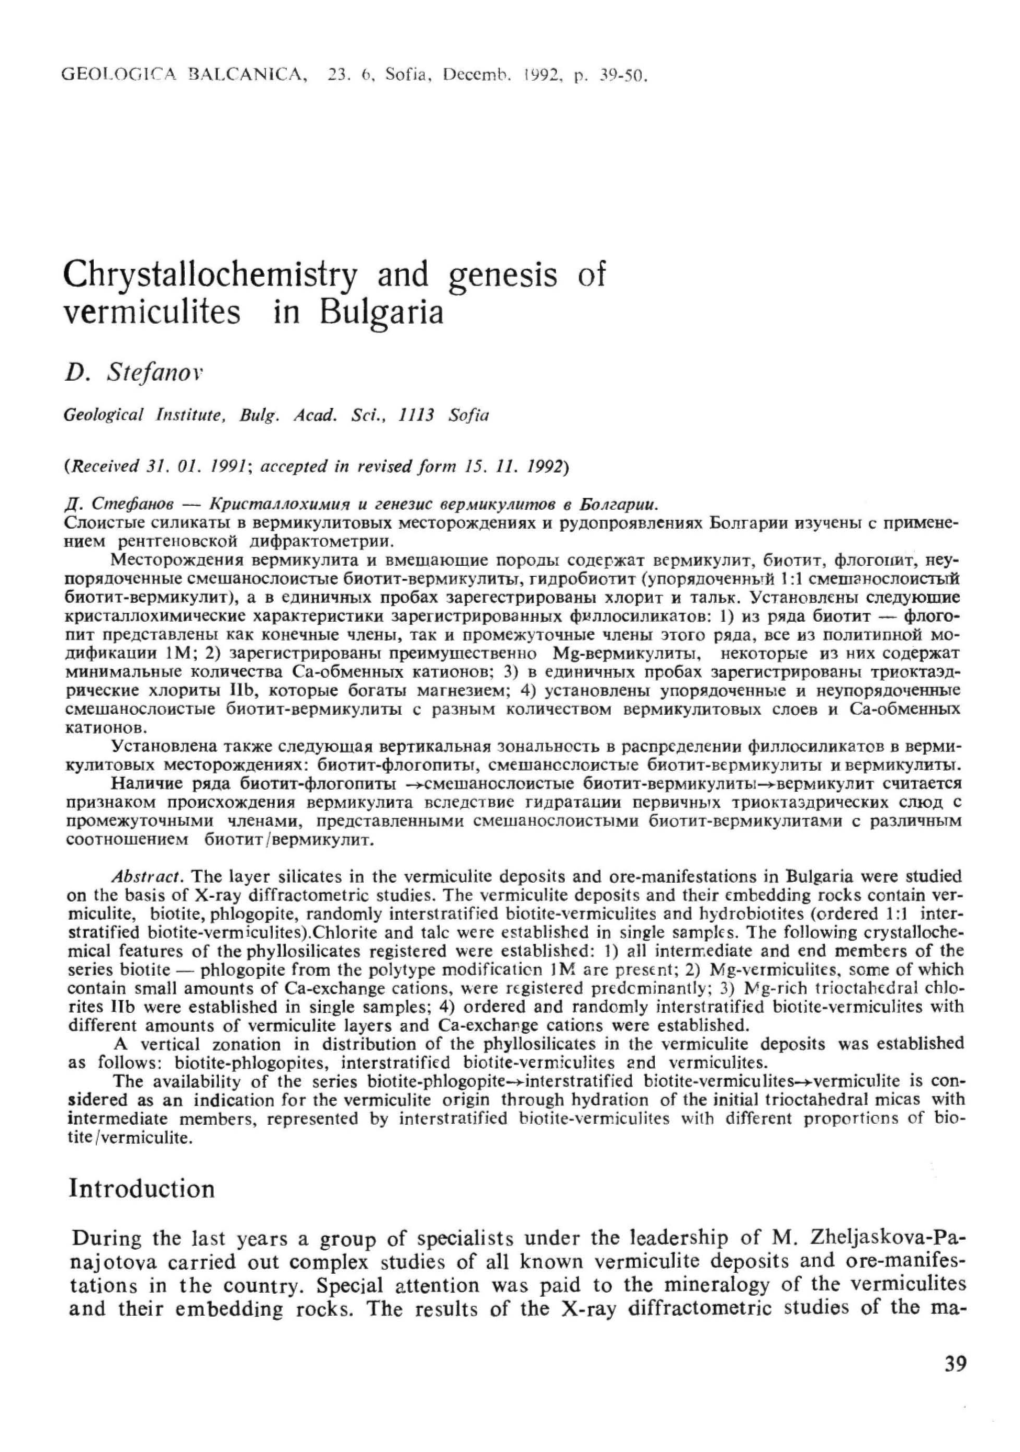 Chrystallochemistry and Genesis of Vermiculites in Bulgaria